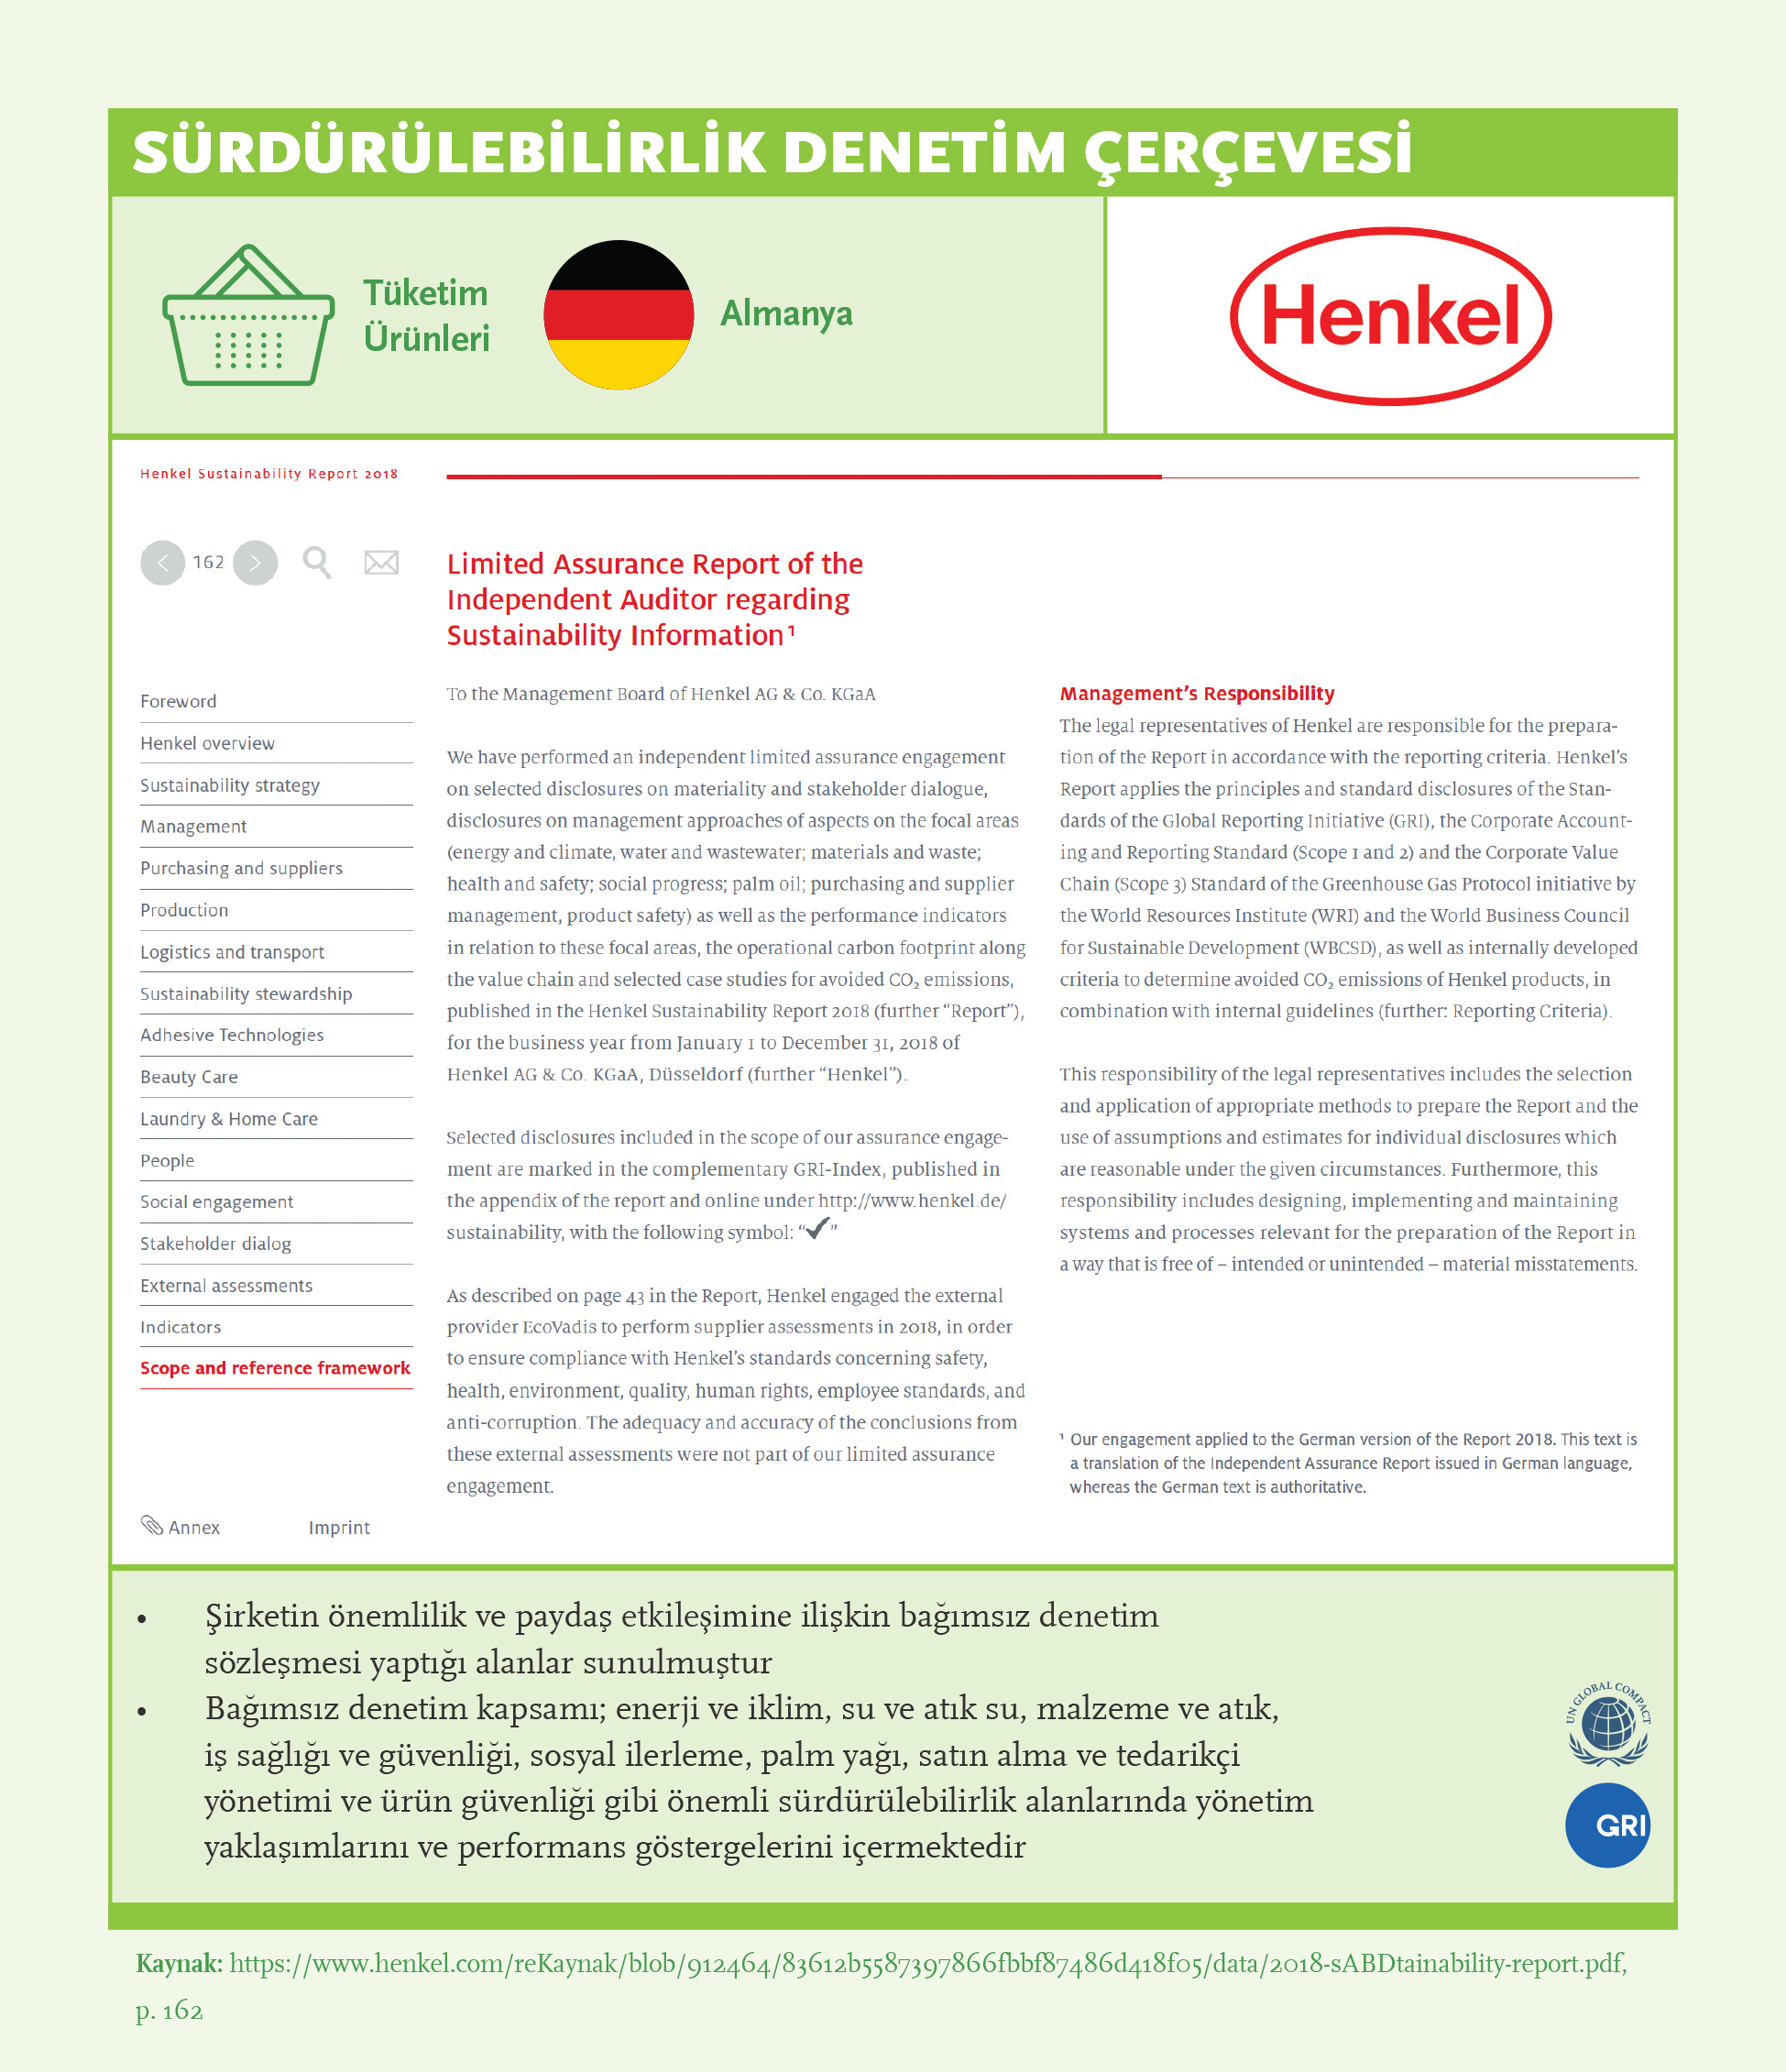 Sürdürülebilirlik Denetim Çerçevesi: Henkel